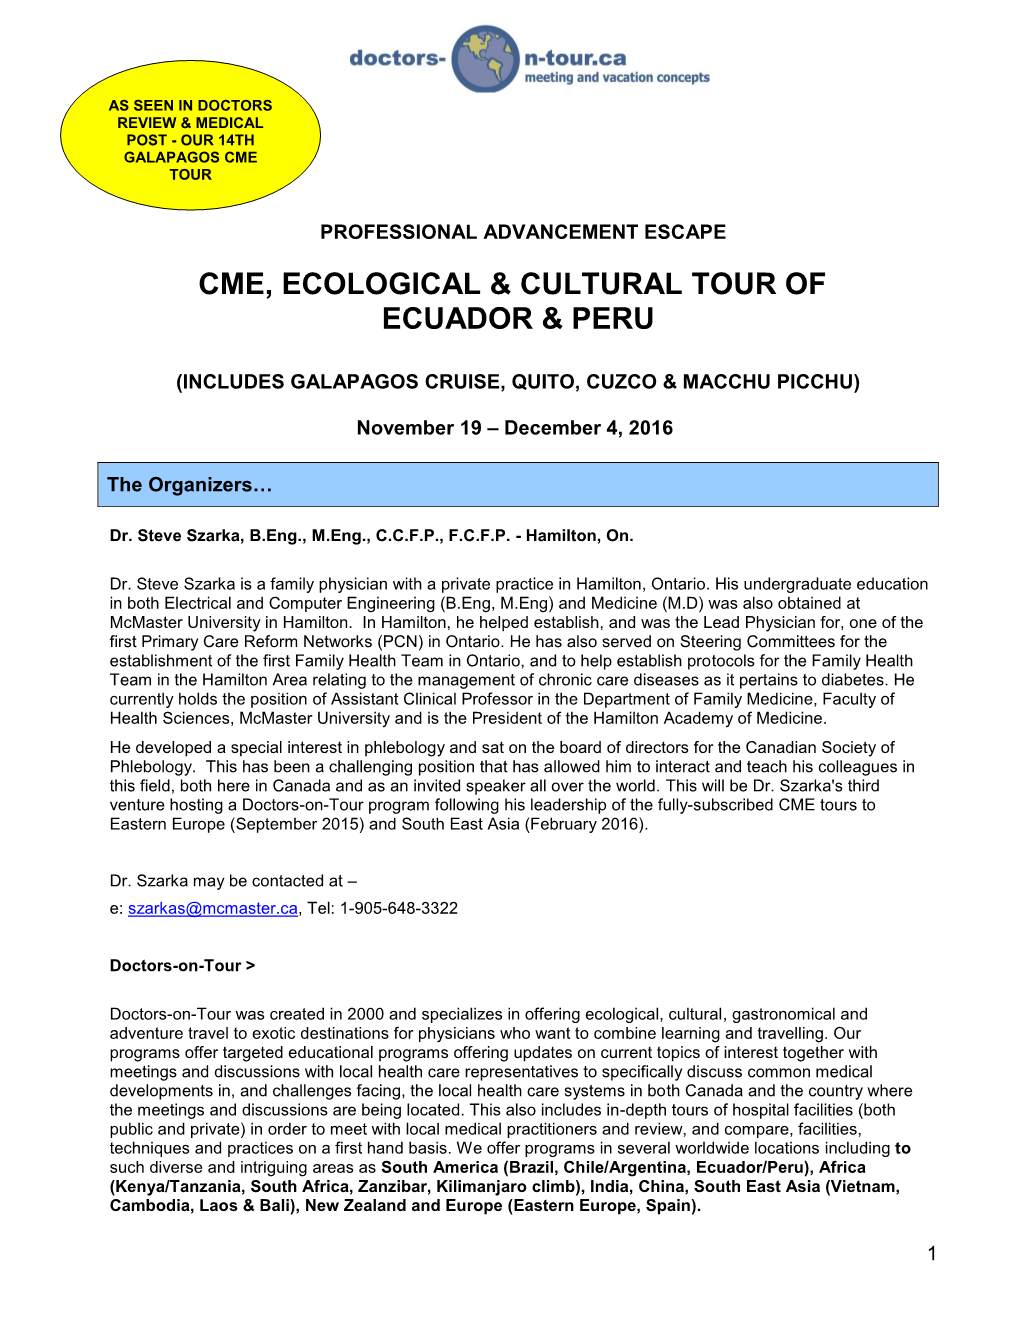 Ecuador & Peru